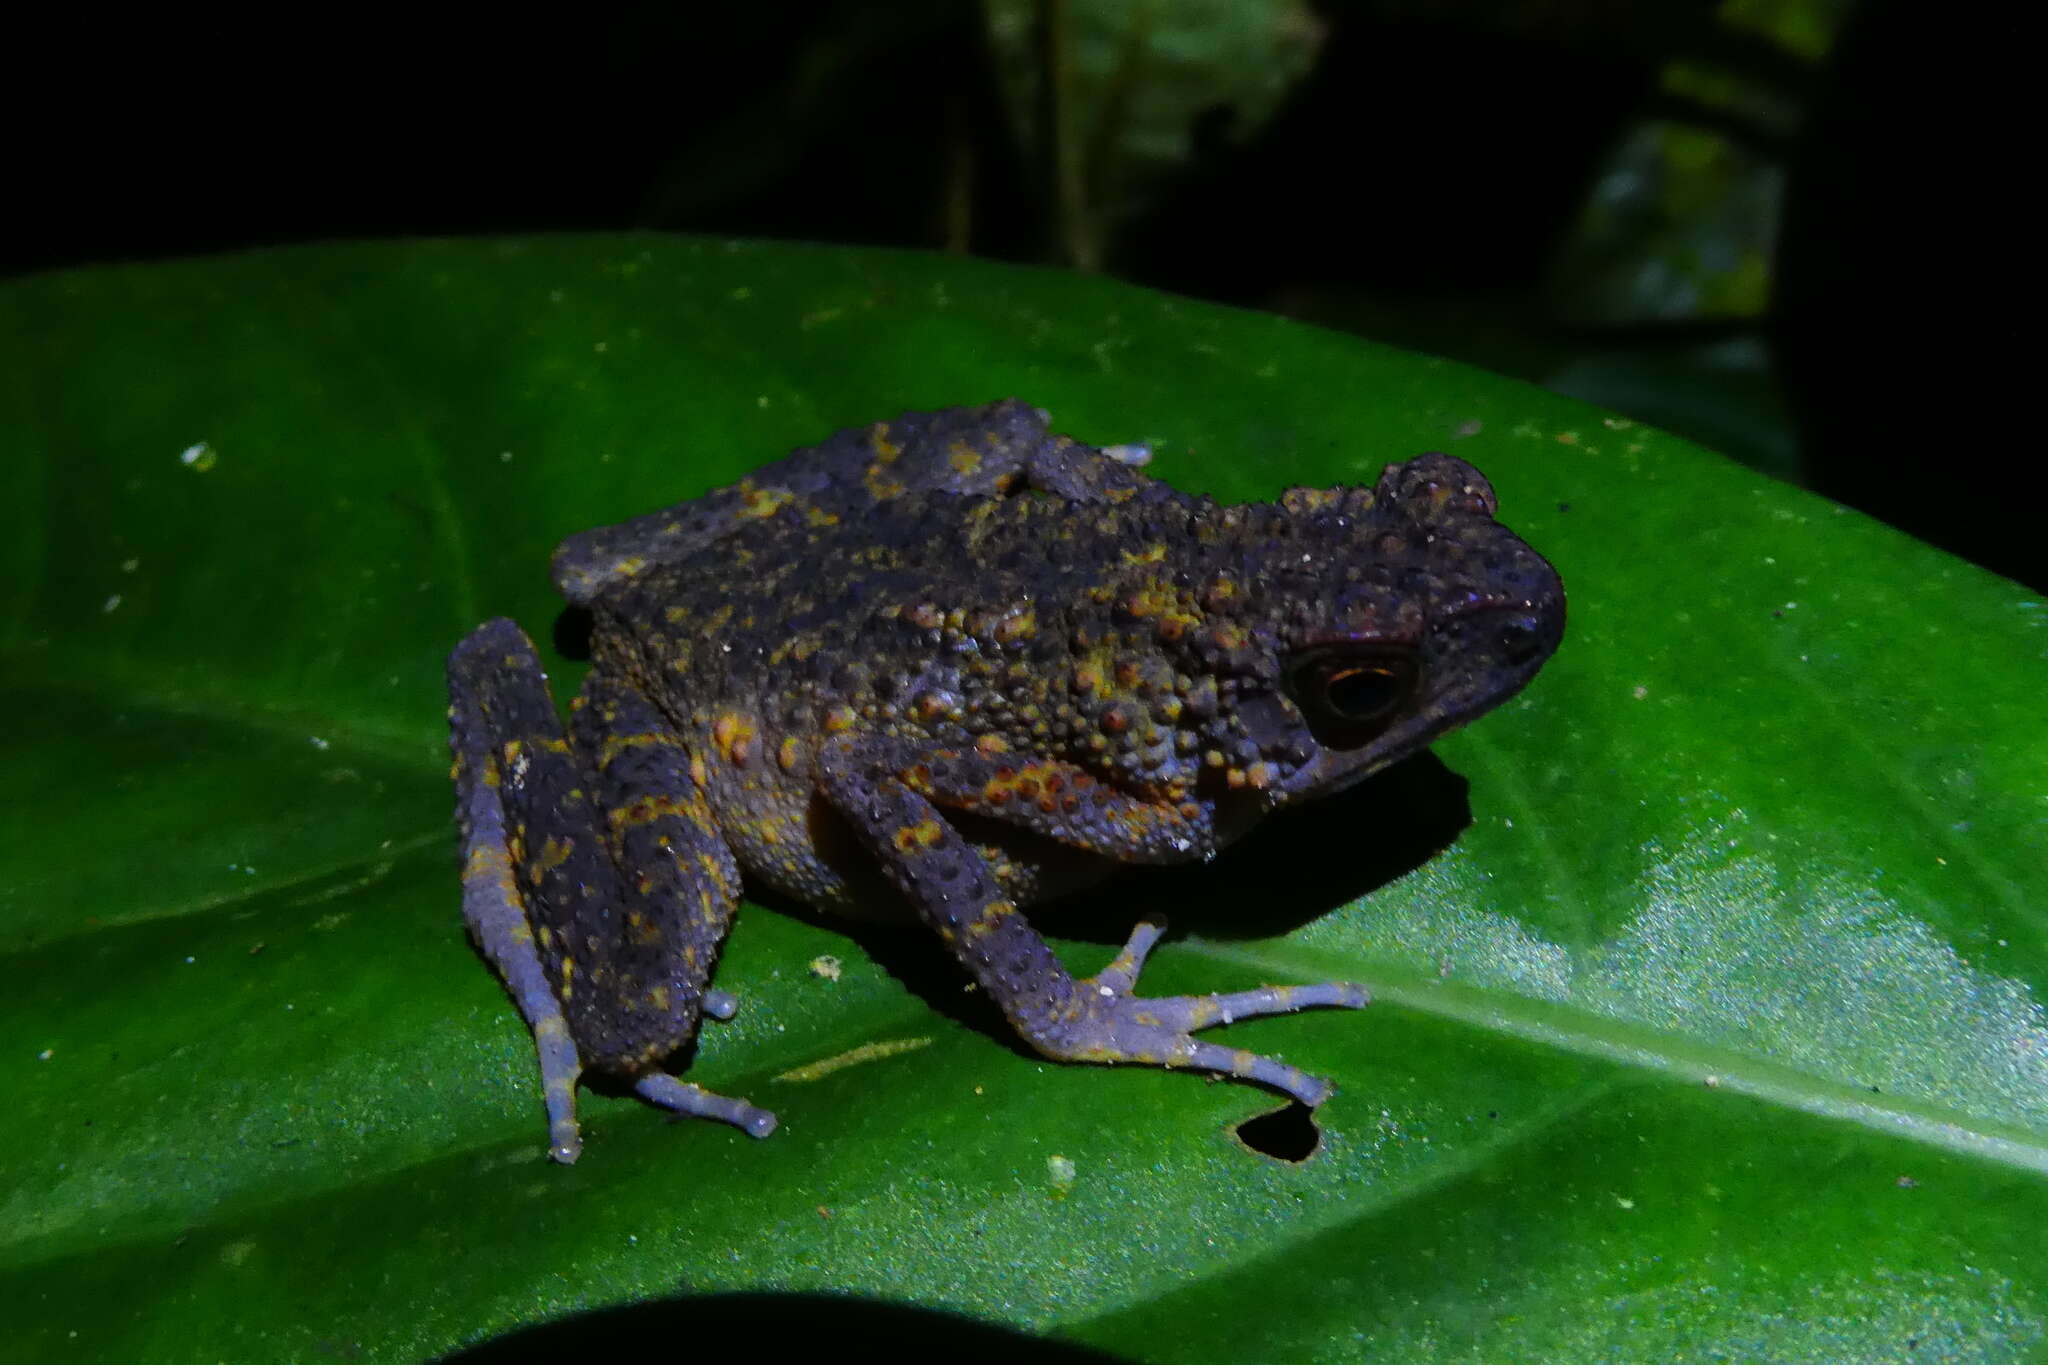 Image of Long-fingered Slender Toad